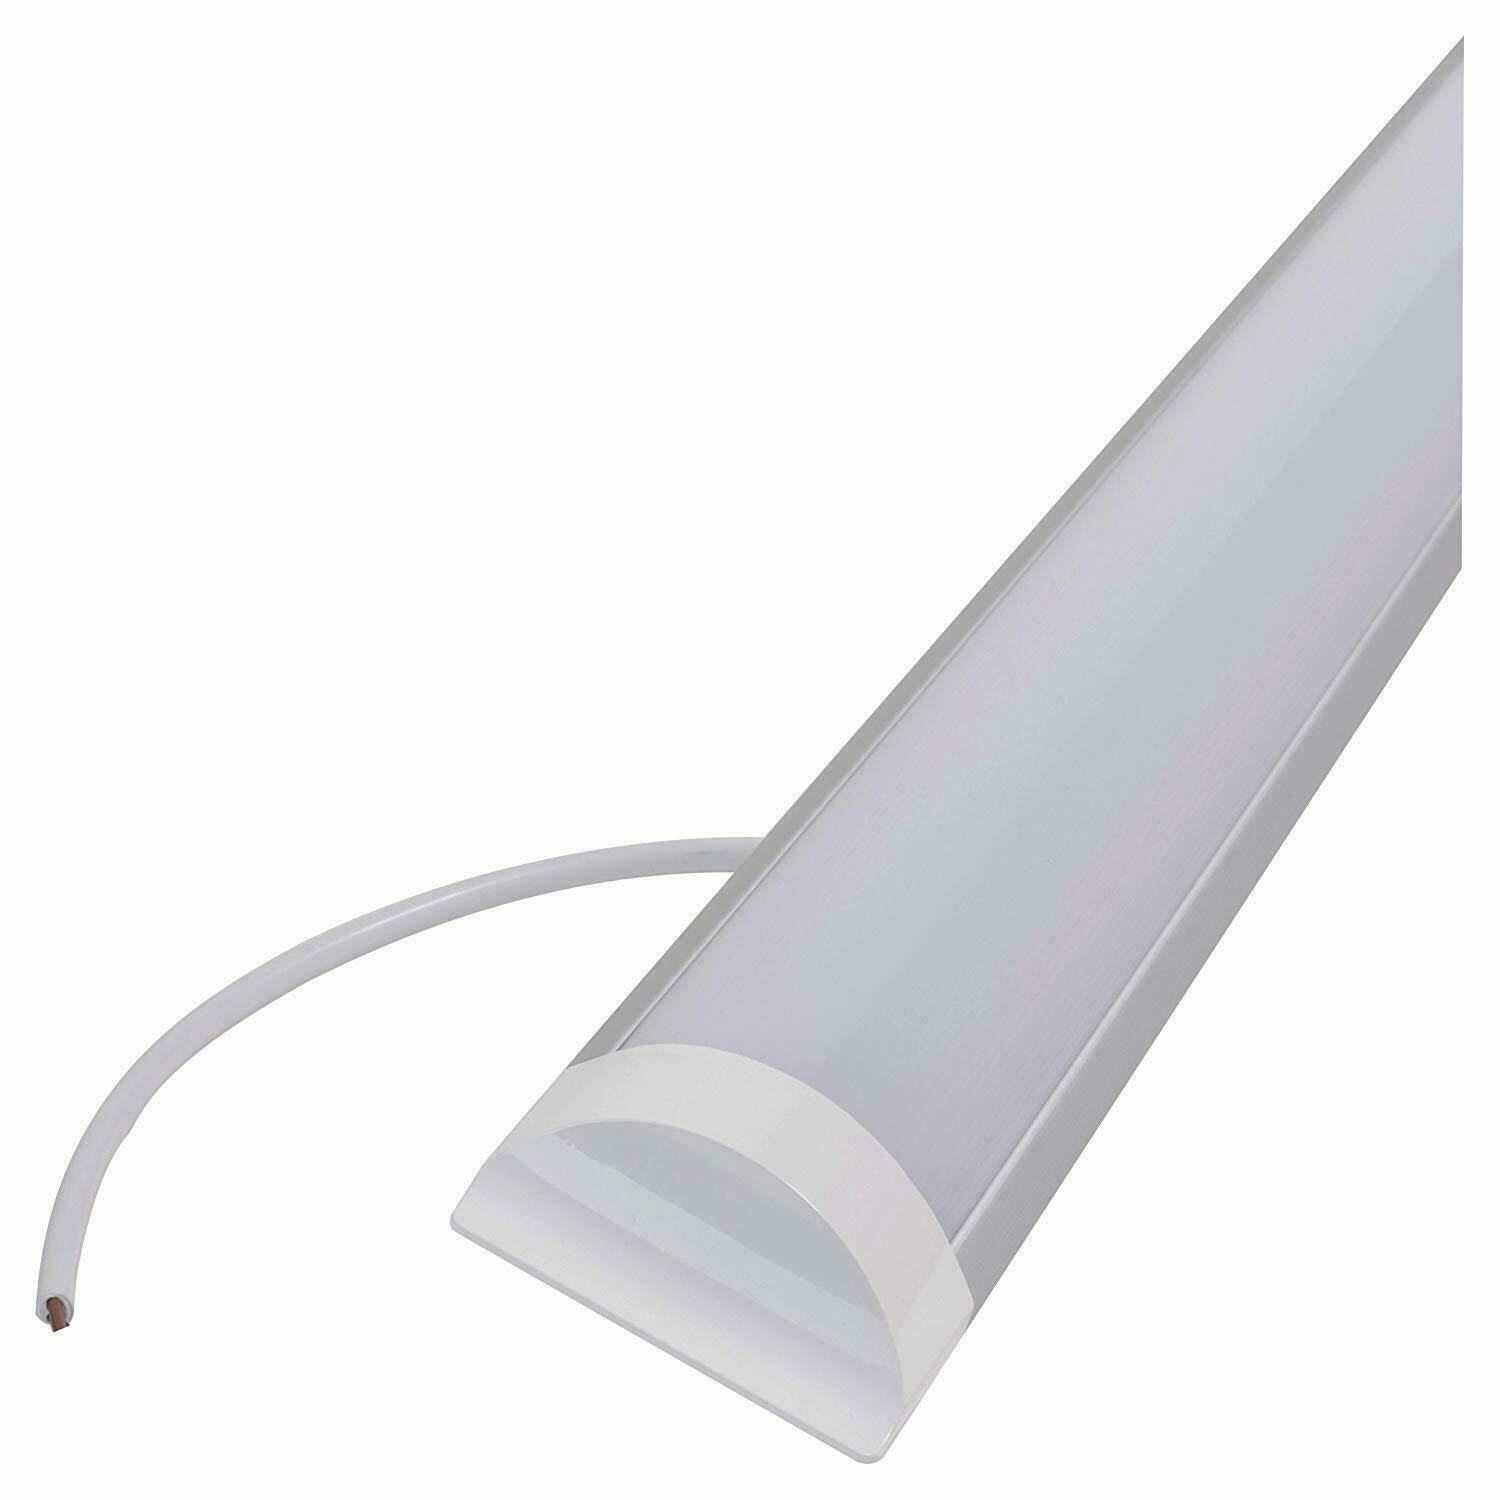 4 FT /120 cm LED Batten Tube Linear Light Slim Ceiling Lamp Surface Mounted Flat UKEW®